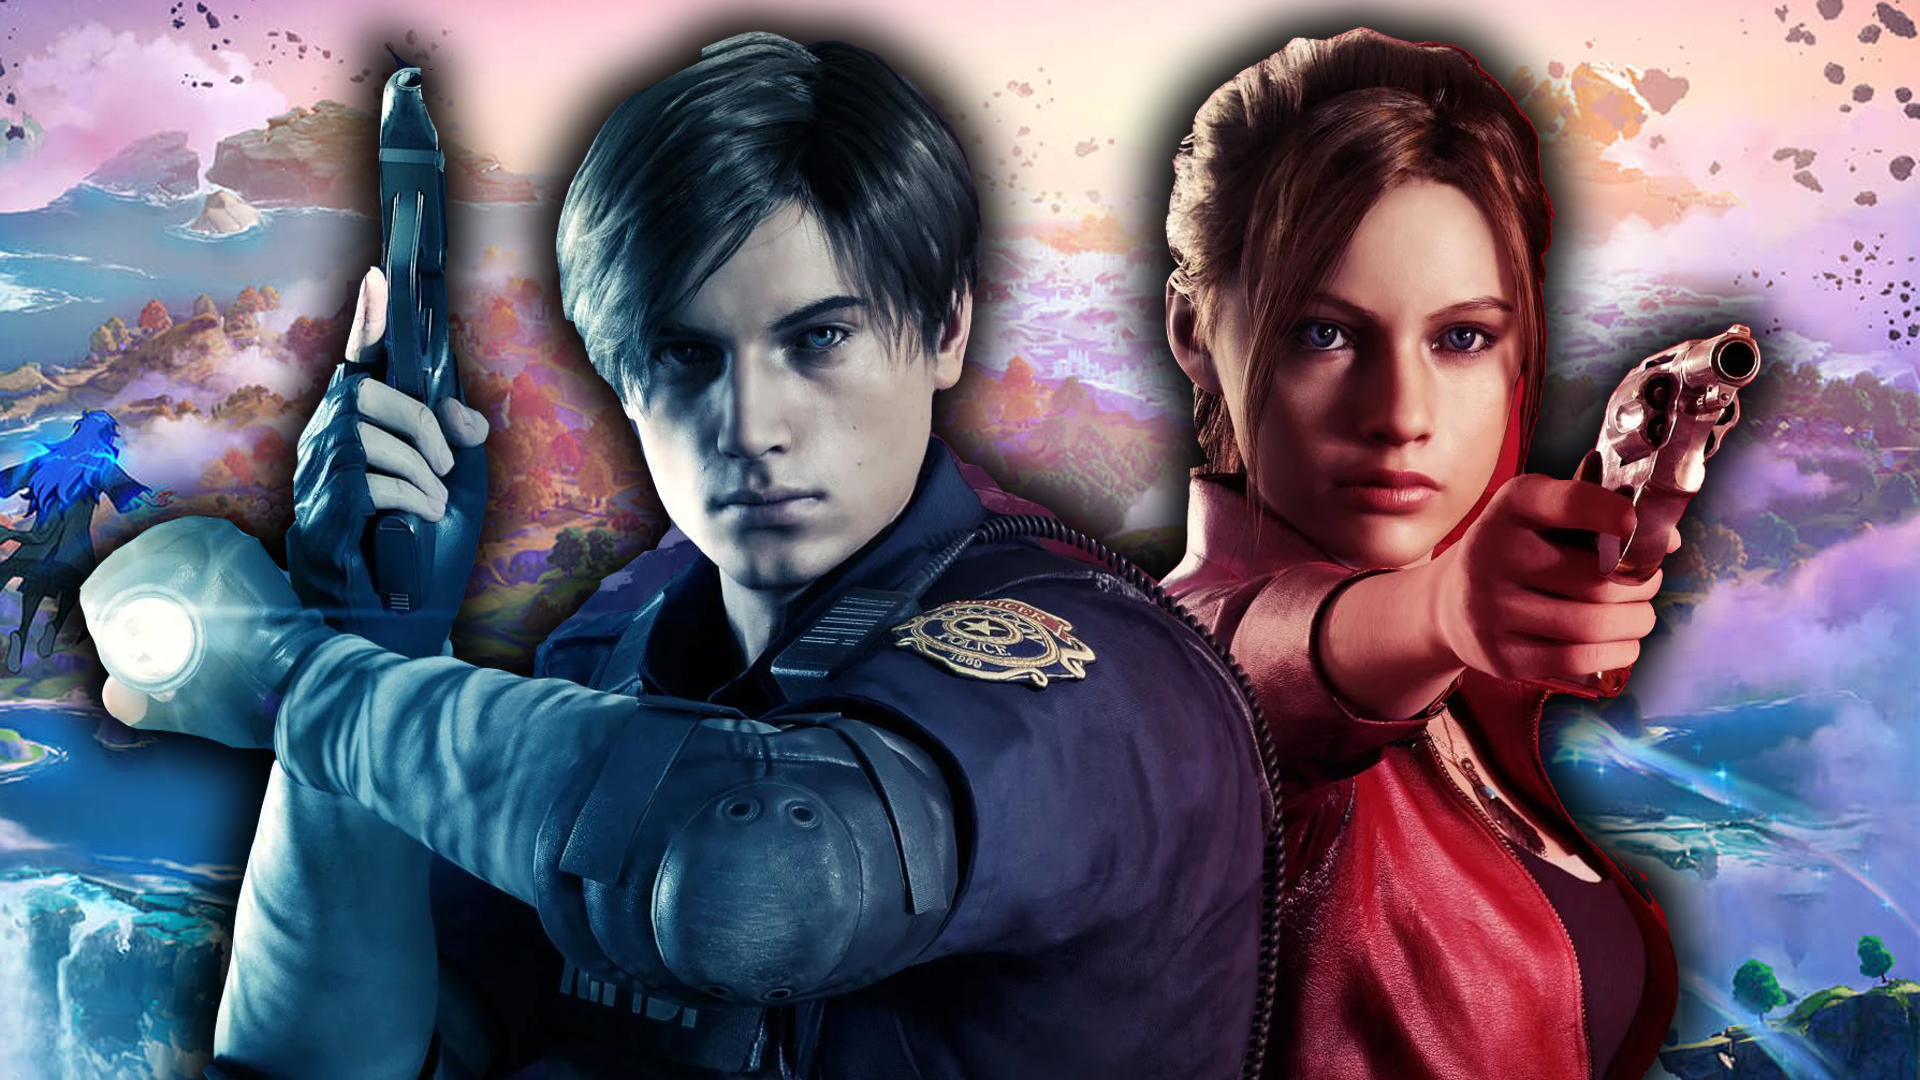 Fortnite: Leon e Claire, de Resident Evil 2, são as novas skins do